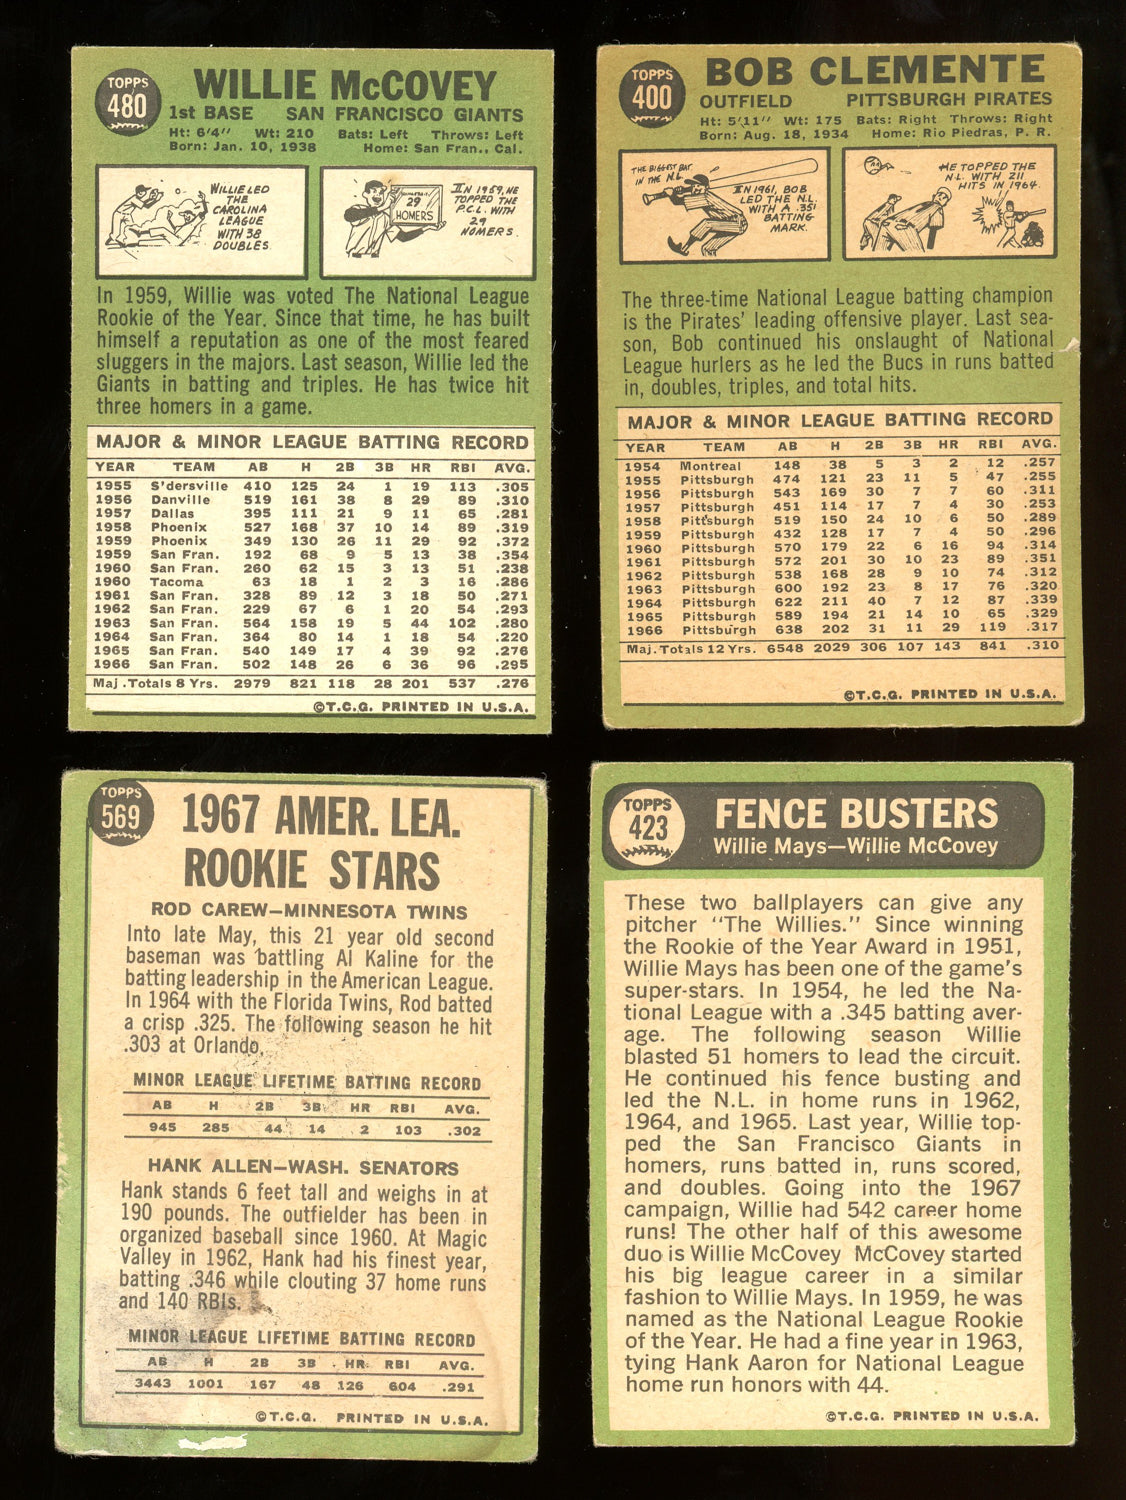 1967 TOPPS BASEBALL COMPLETE SET BREAK - 9 CARDS PER BOX